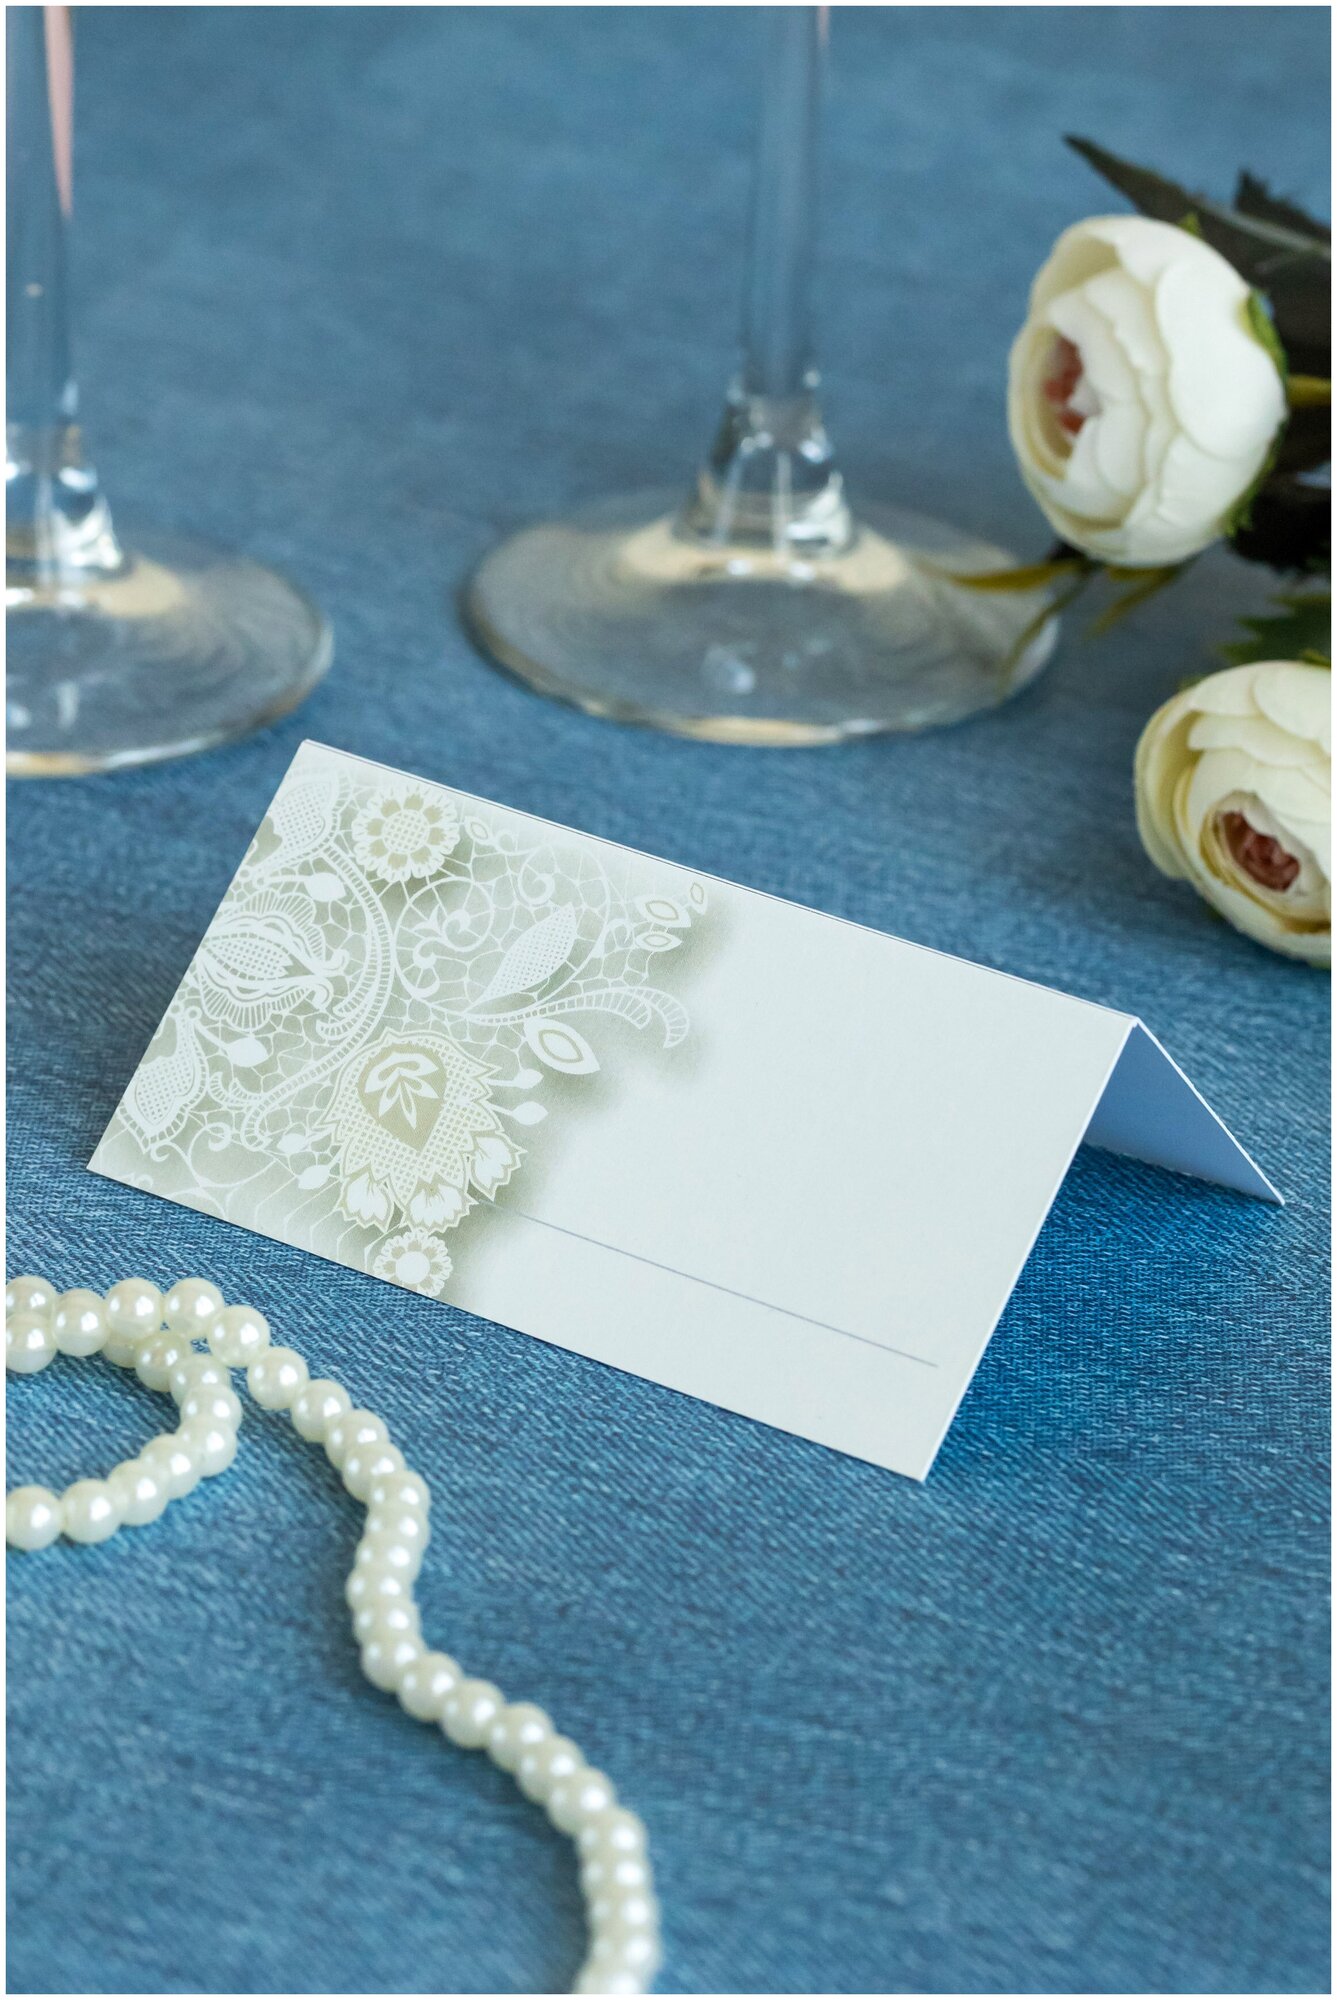 Свадебная карточка для рассадки гостей за столом на банкете, из картона белого цвета с кружевным узором на обложке, 10 штук